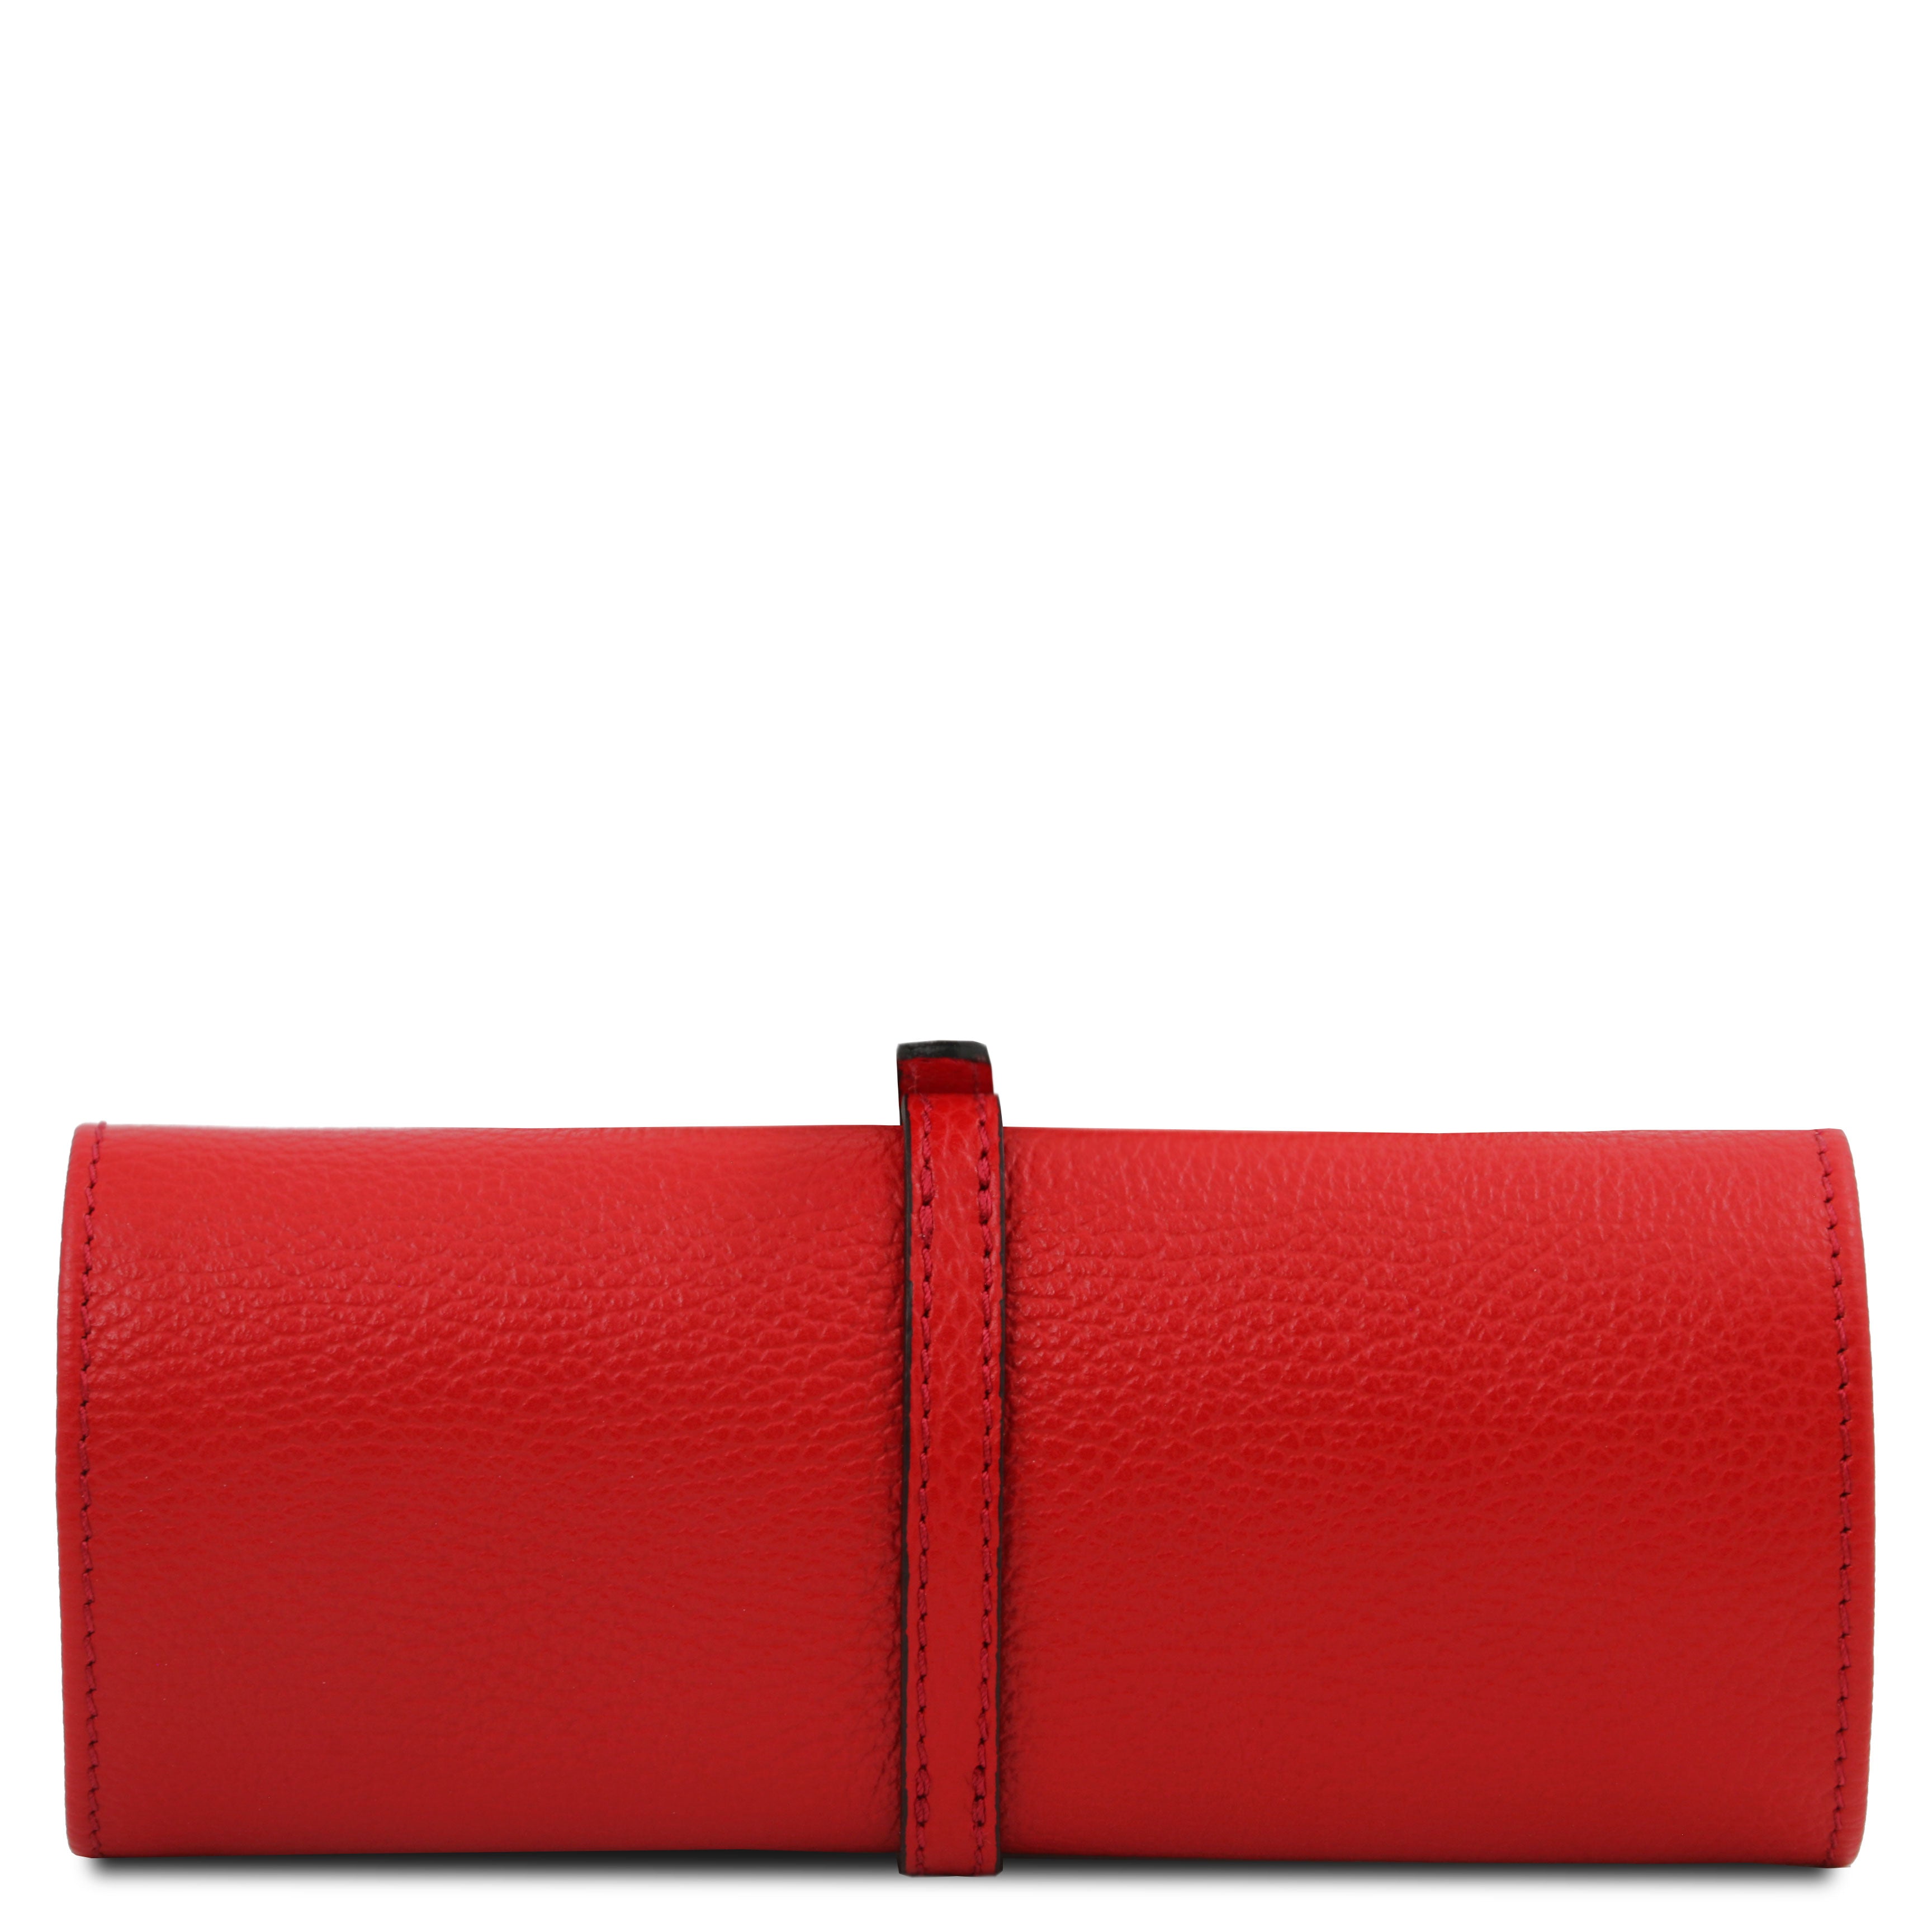 Tuscany Leather sieradendoosje leer rood achterkant